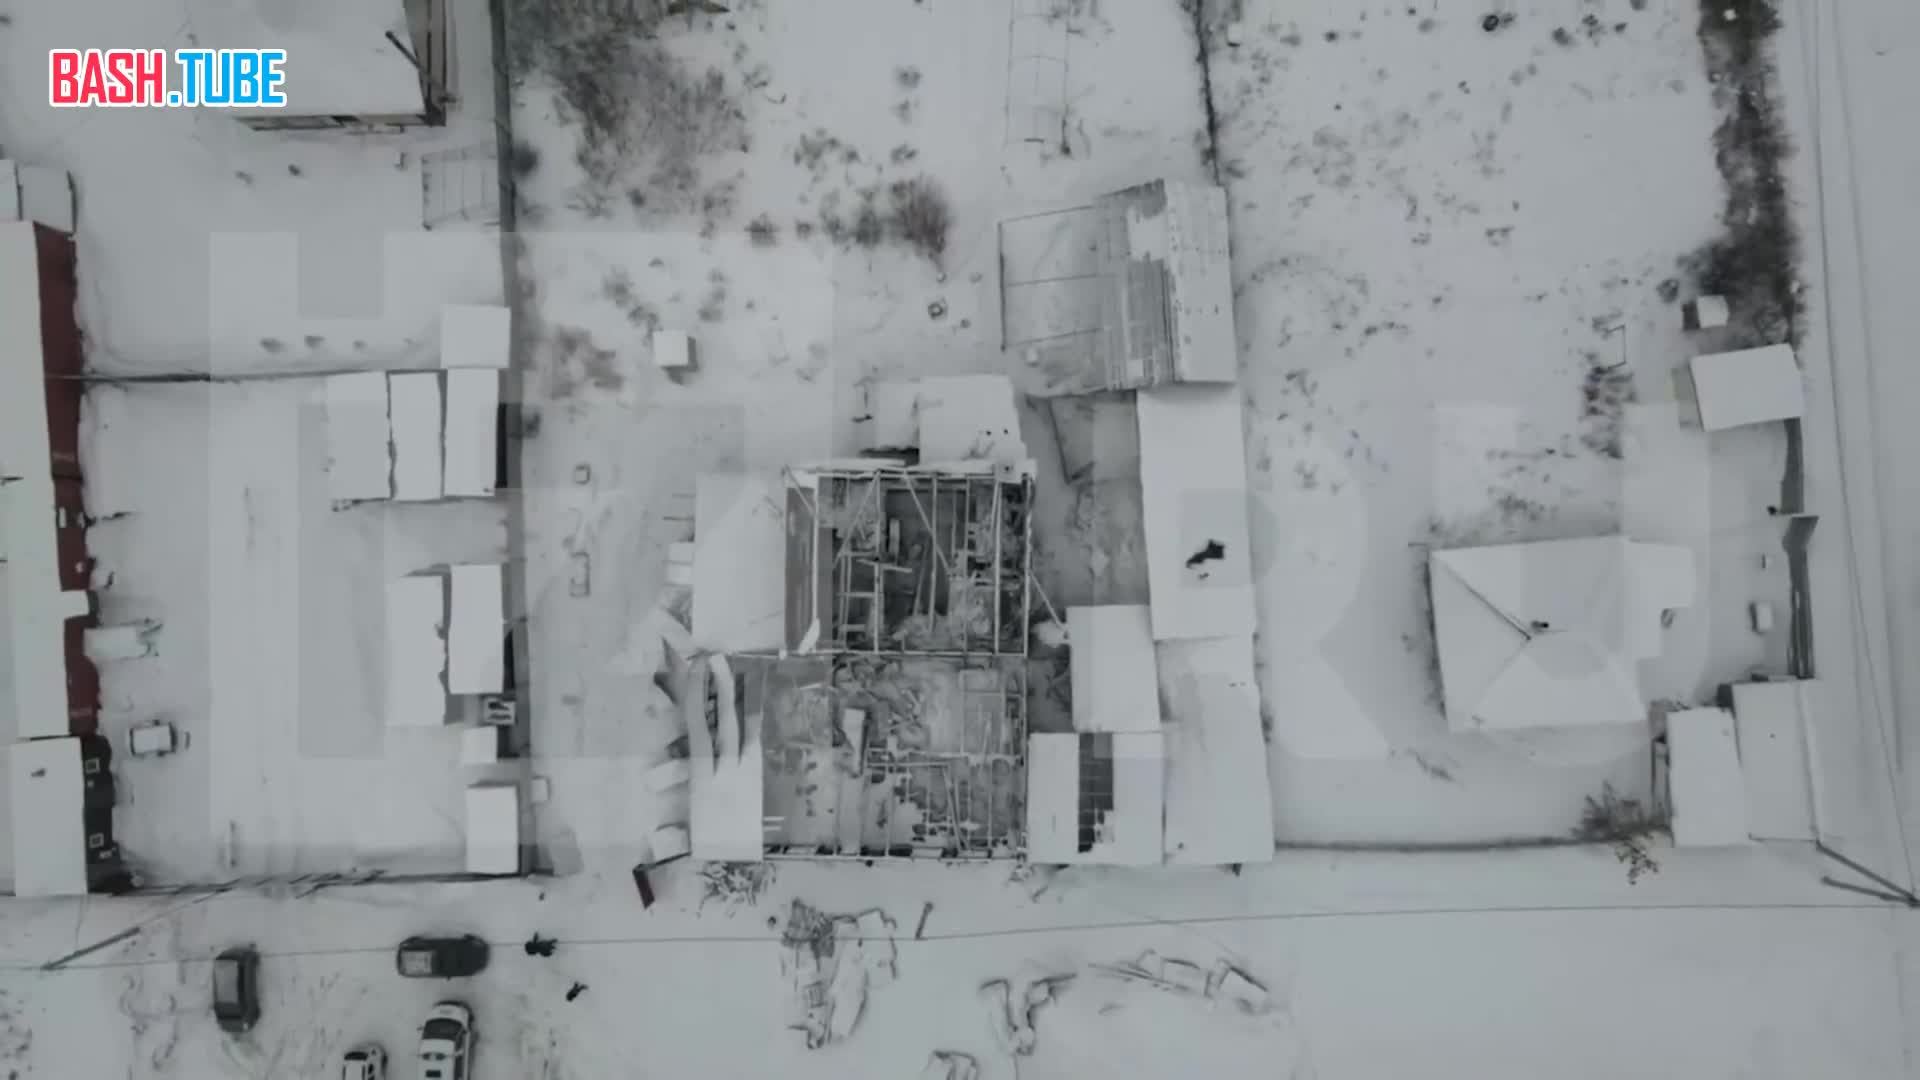  Видео с коптера, снятое на месте сгоревшего приюта в Кемерово, где погибли 22 человека